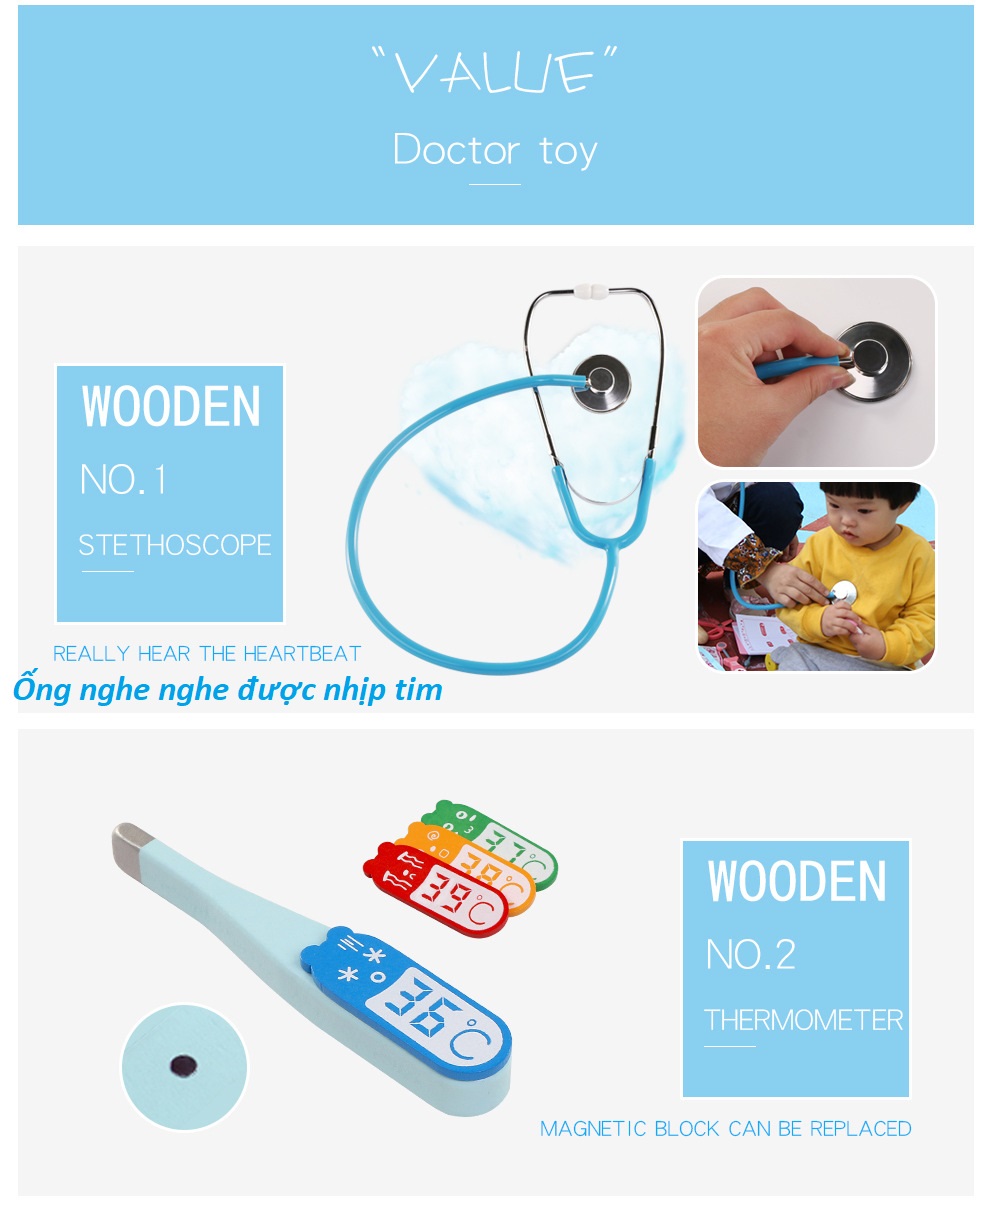 Đồ chơi vali bác sĩ bằng gỗ, đồ chơi bác sĩ, đồ chơi nhập vai phát triển tư duy, kỹ năng giao tiếp cho bé